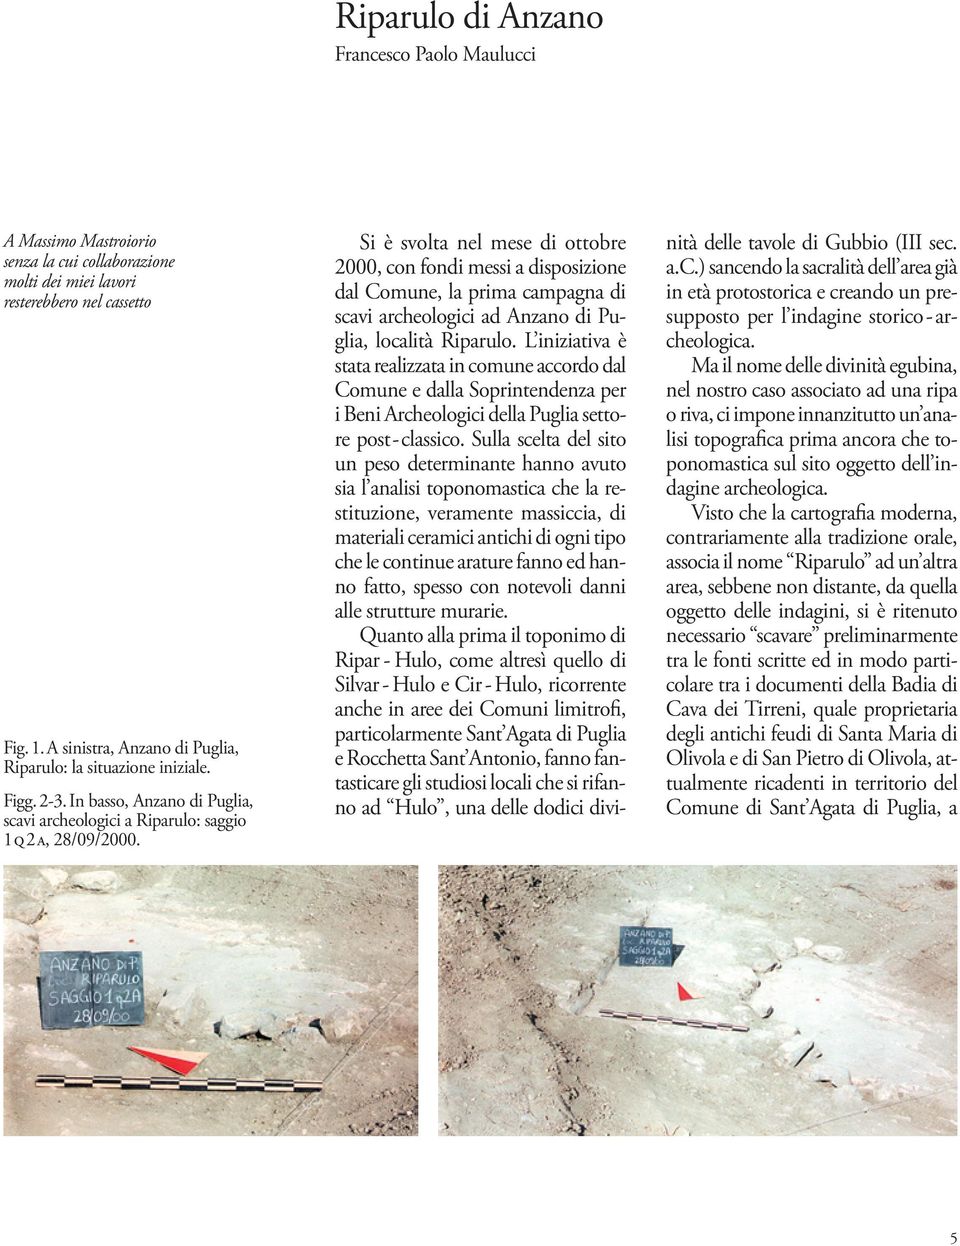 Si è svolta nel mese di ottobre 2000, con fondi messi a disposizione dal Comune, la prima campagna di scavi archeologici ad Anzano di Puglia, località Riparulo.